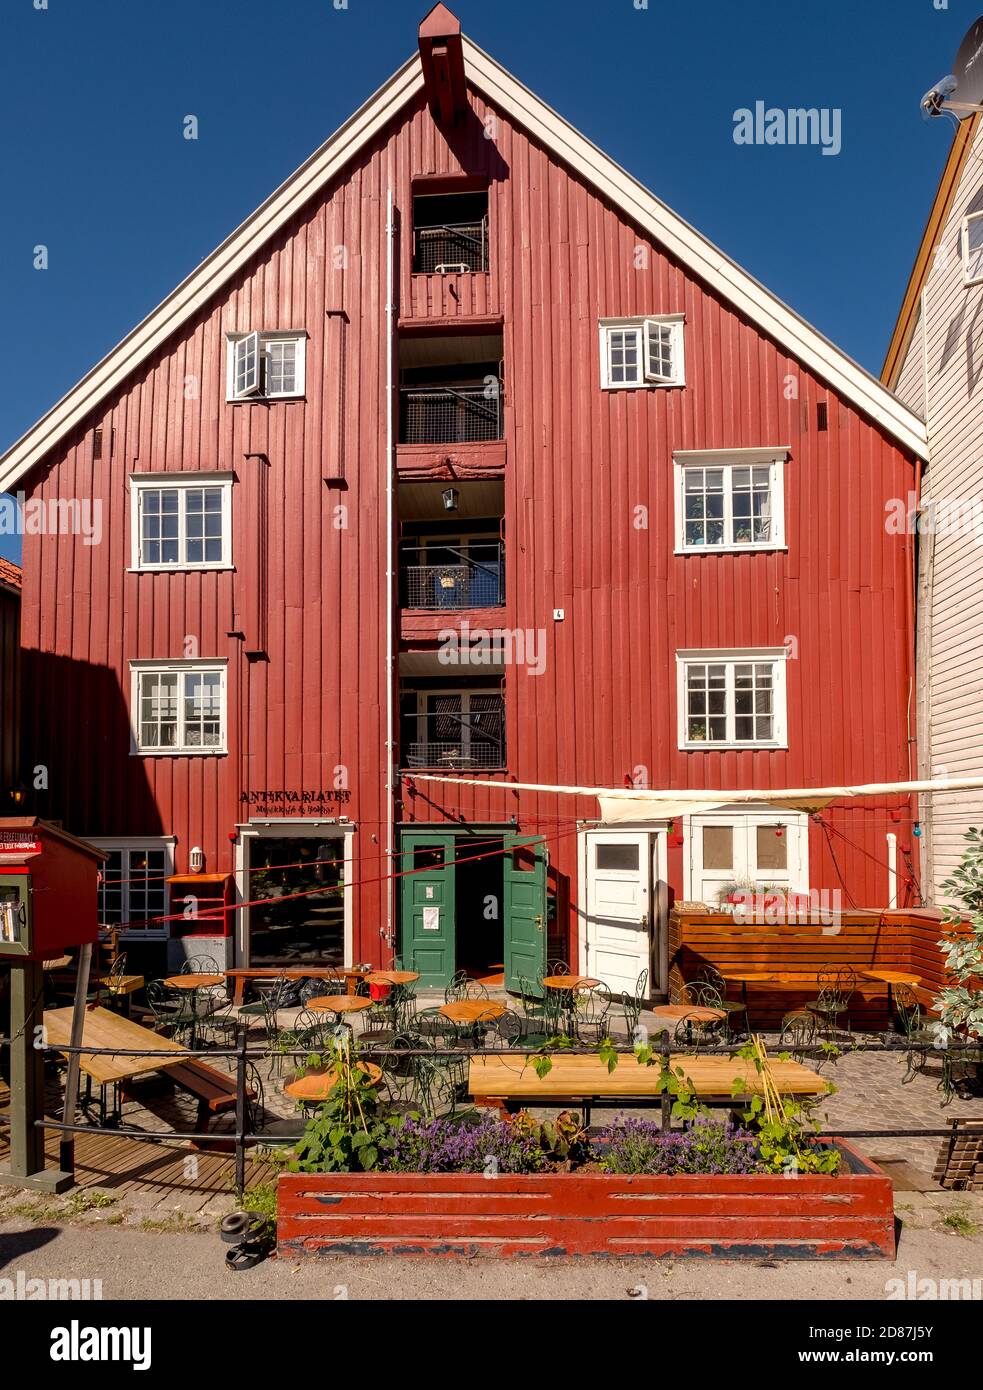 Deposito casa, Trondheim, Trøndelag, Norvegia, Scandinavia, Europa, viaggio avventura, turismo, Hurtigruten, viaggio Hurtigruten, crociera, NOR, casa norvegese Foto Stock